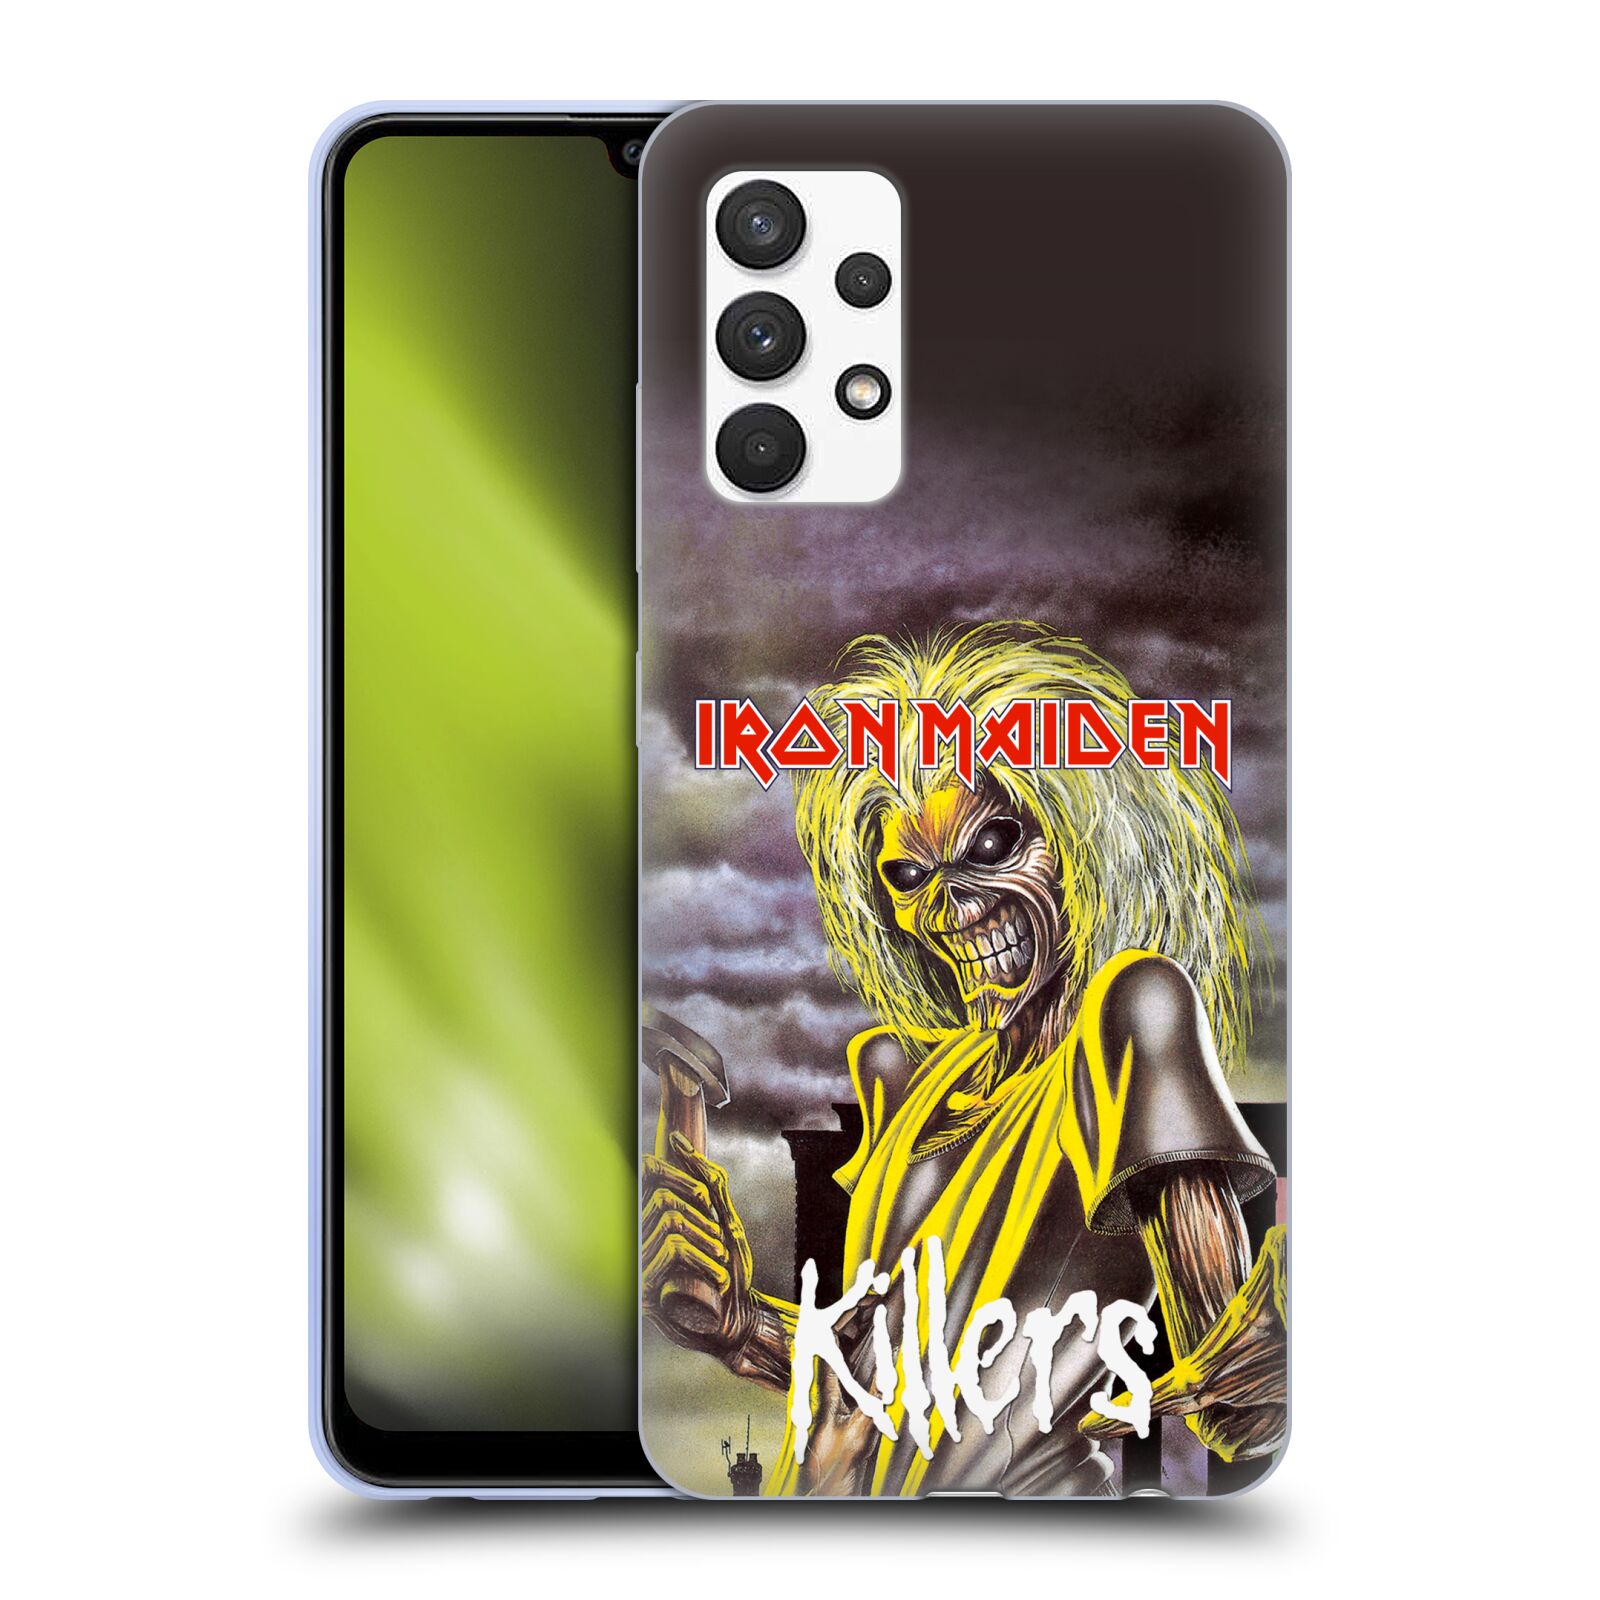 Silikonové pouzdro na mobil Samsung Galaxy A32 4G - Head Case - Iron Maiden - Killers (Silikonový kryt, obal, pouzdro na mobilní telefon Samsung Galaxy A32 4G s motivem Iron Maiden - Killers)